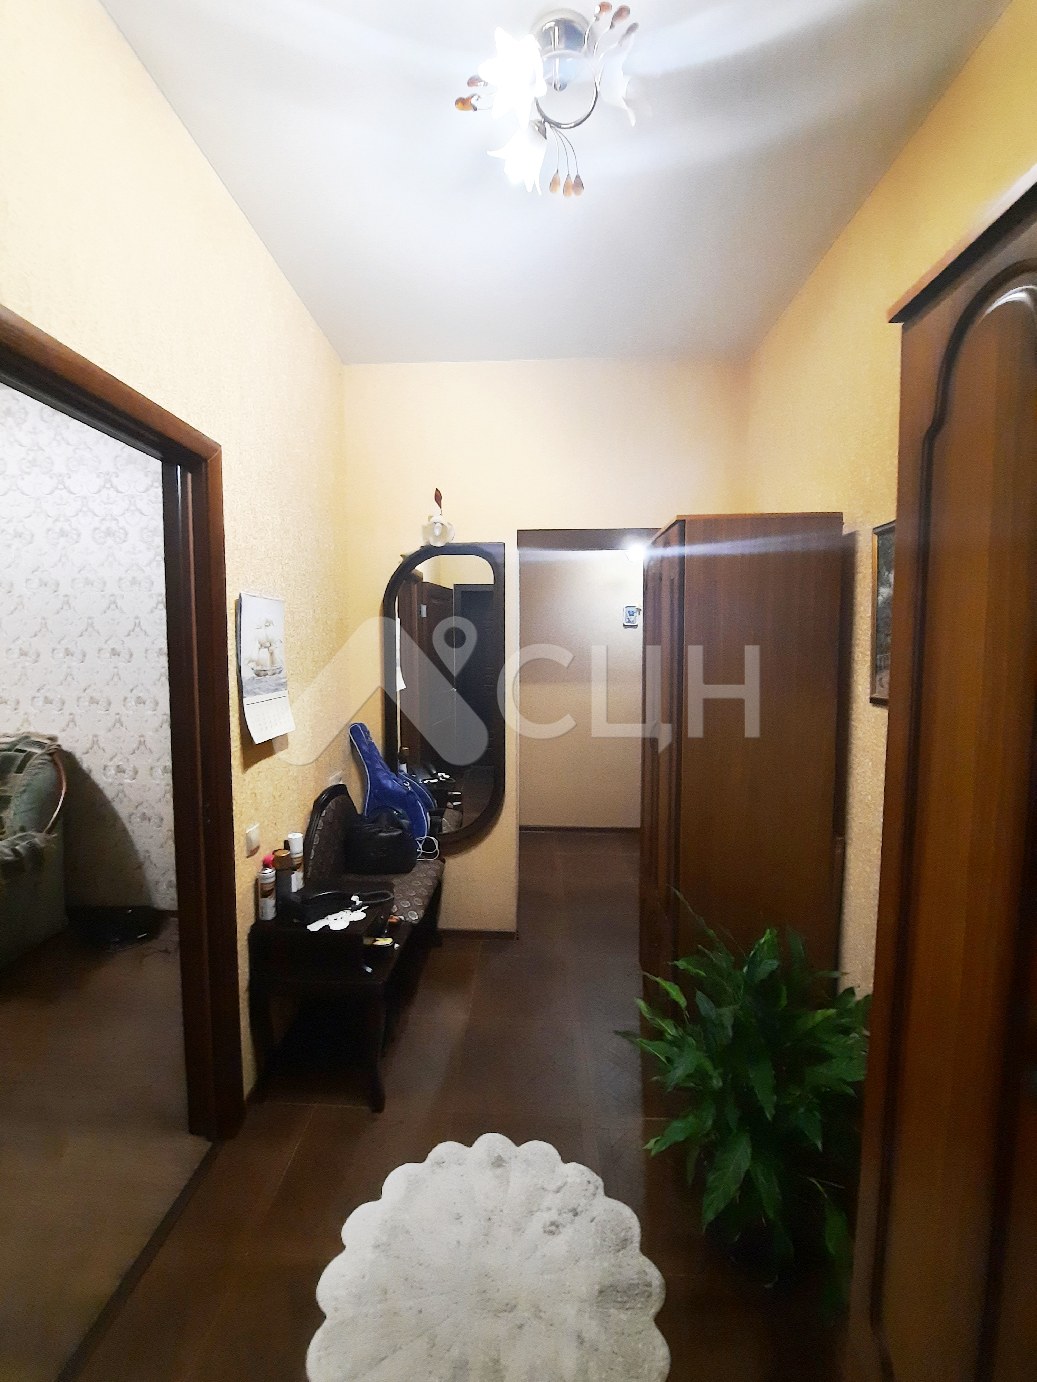 Жилье вторичка саров
: Г. Саров, улица Дзержинского, 7, 2-комн квартира, этаж 1 из 3, продажа.